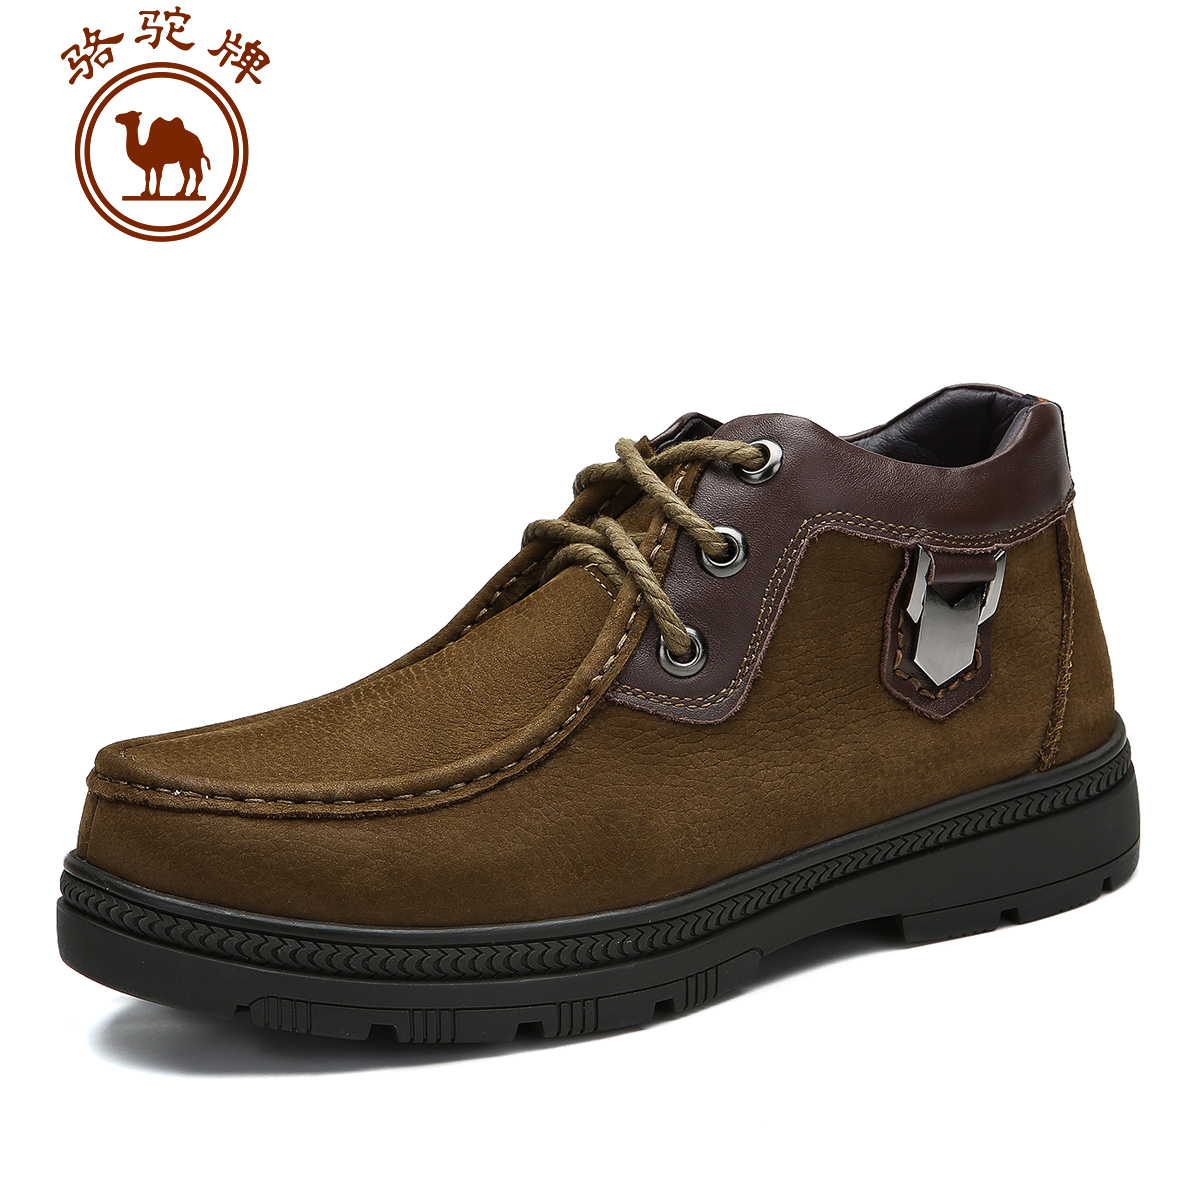 Boots - chaussures en cuir ronde pour hiver - loisir - semelle caoutchouc - Ref 957787 Image 2